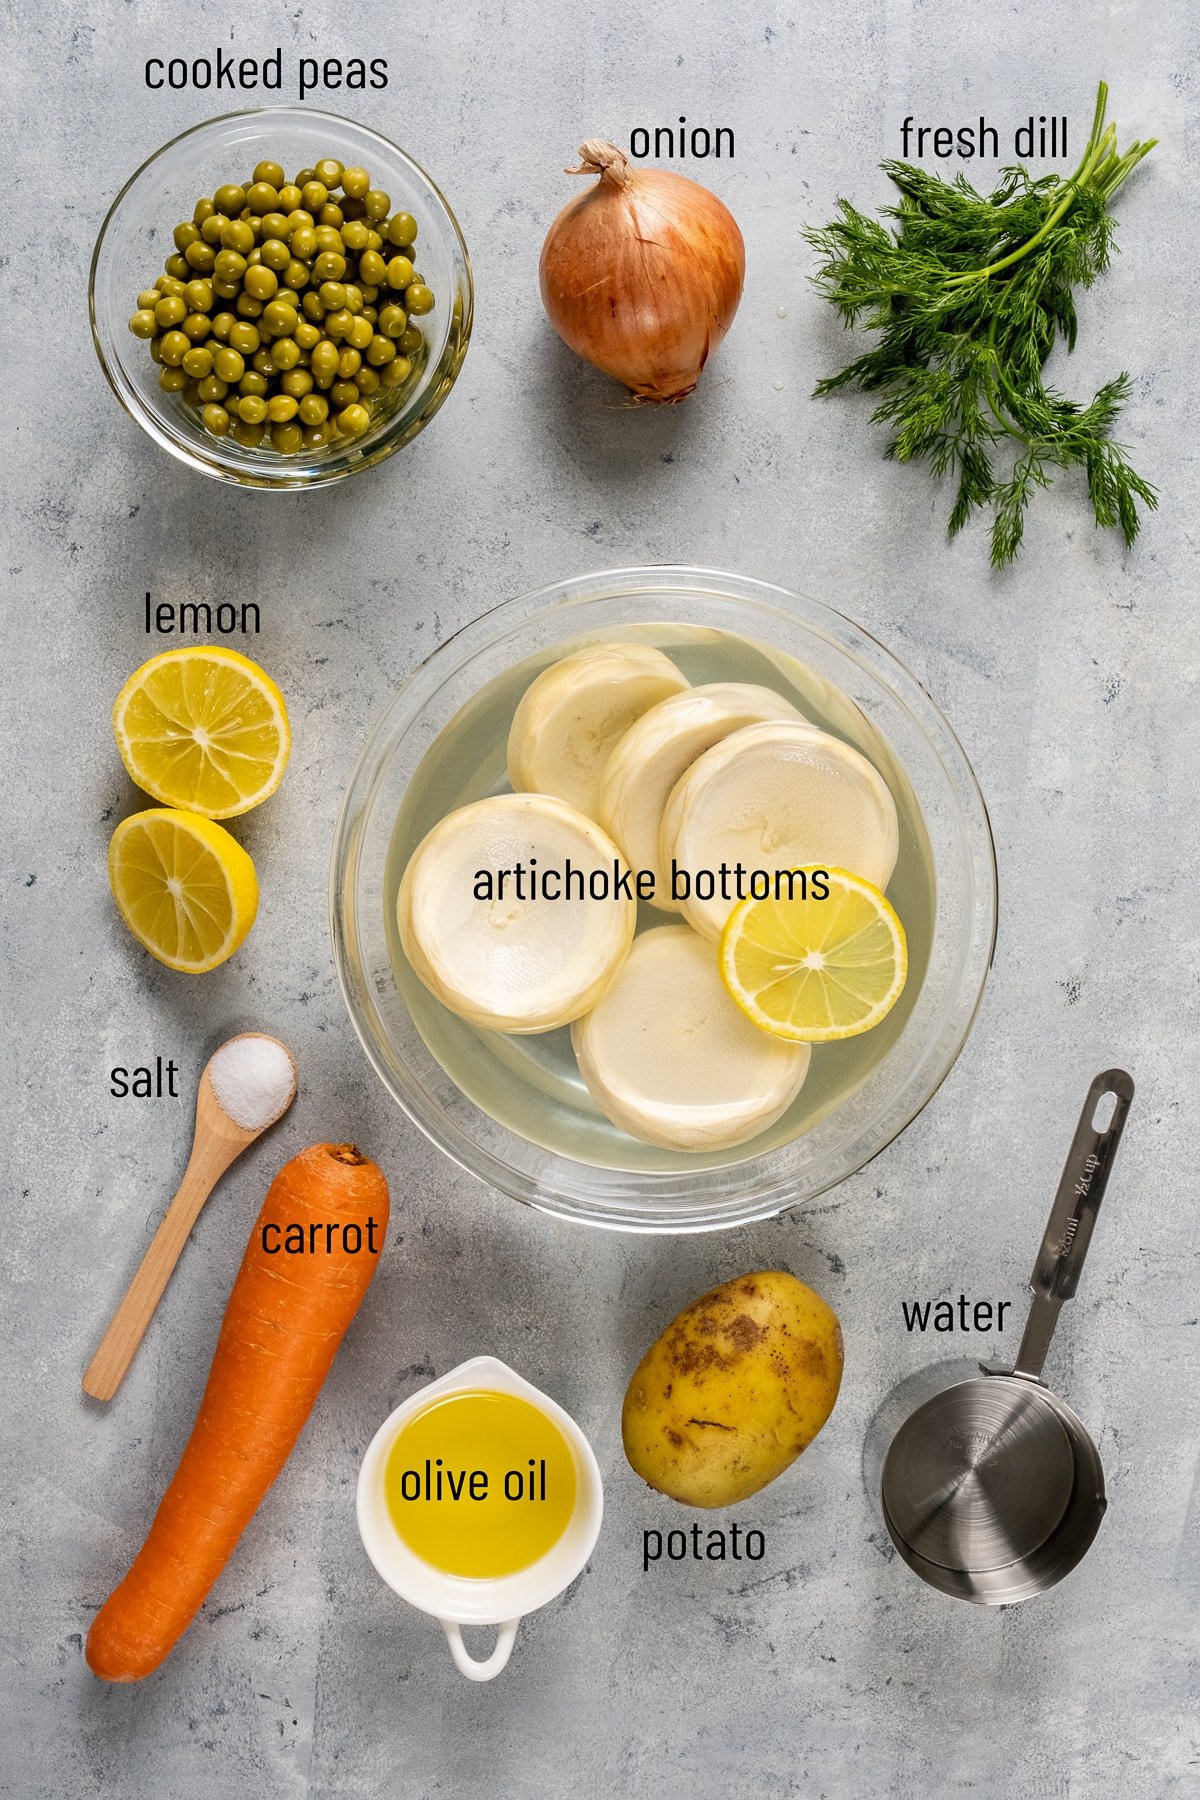 洋蓟底部、豌豆、洋葱、新鲜莳萝、柠檬、胡萝卜、土豆和橄榄油在灰色背景。